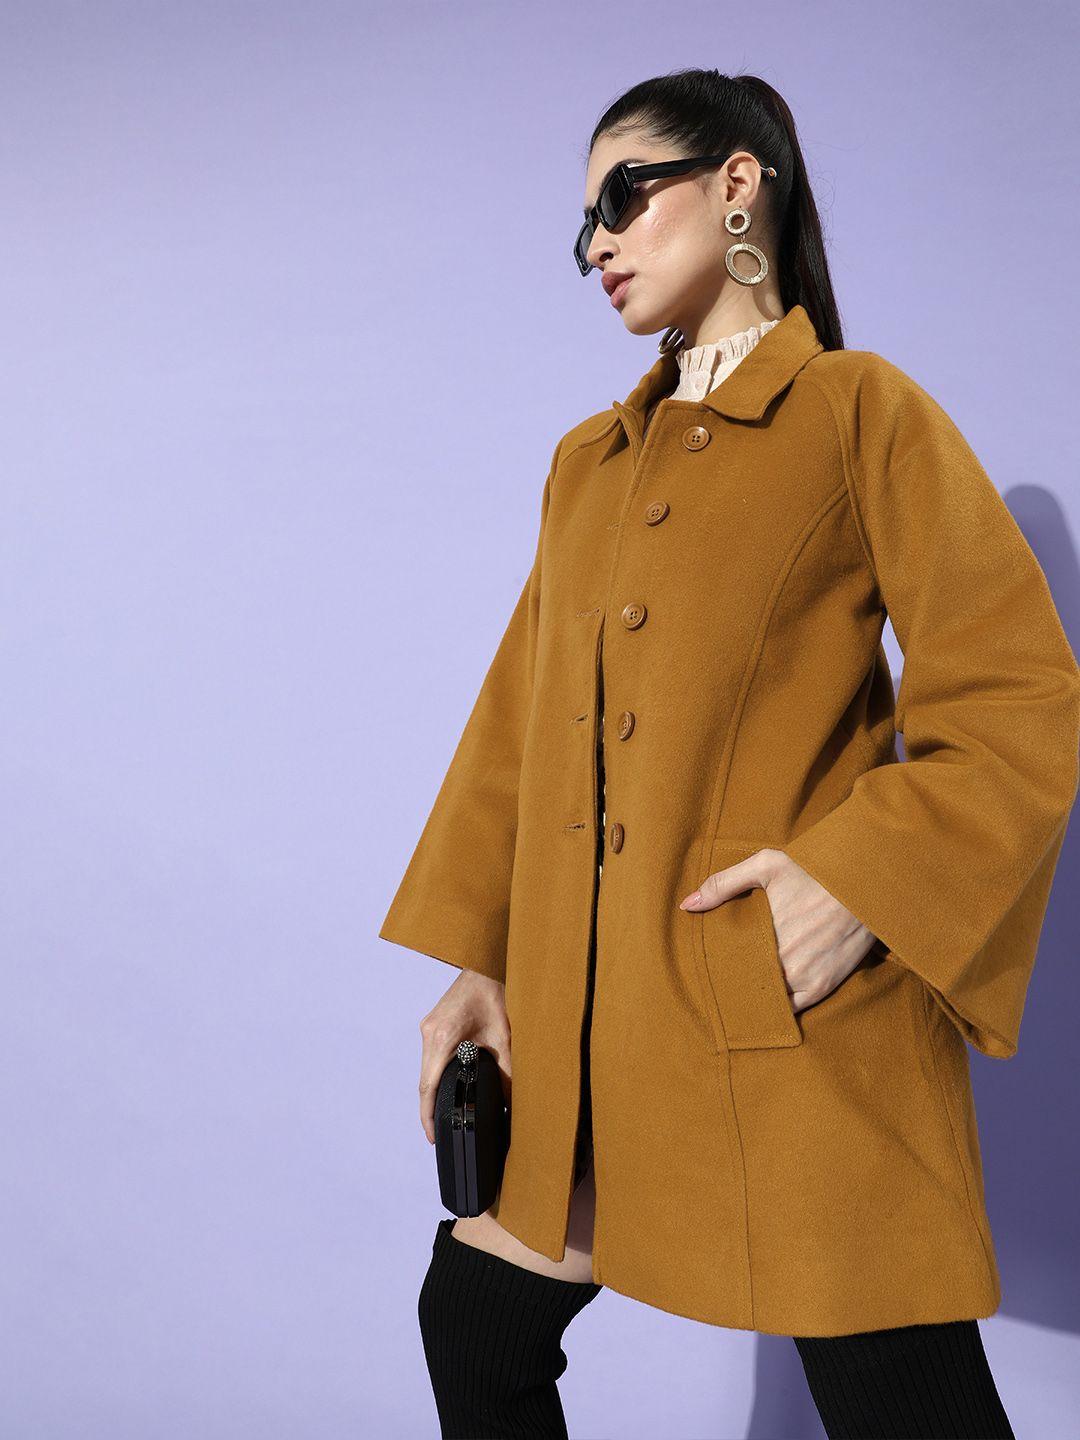 zink london women tan brown solid overcoat